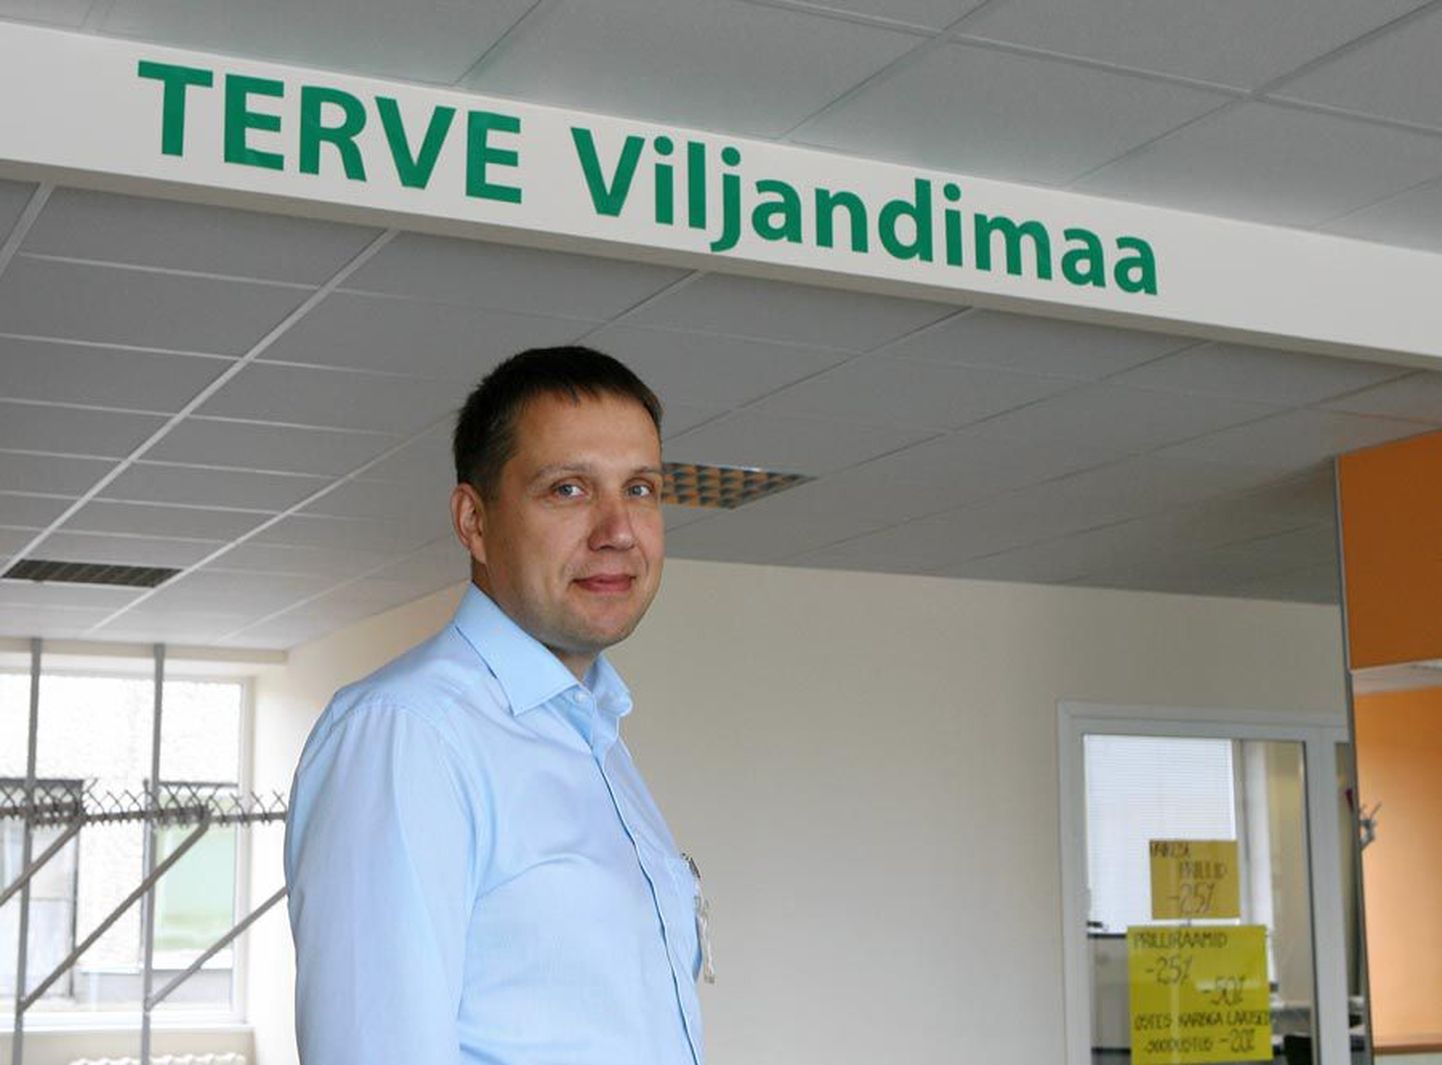 Priit Tampere kinnitab, et pole Viljandi haiglat juhtides Reformierakonna soosik, vaid sõltumatu mees, kes tahab maakonnale üliolulise asutuse tulevikku kindlustada.